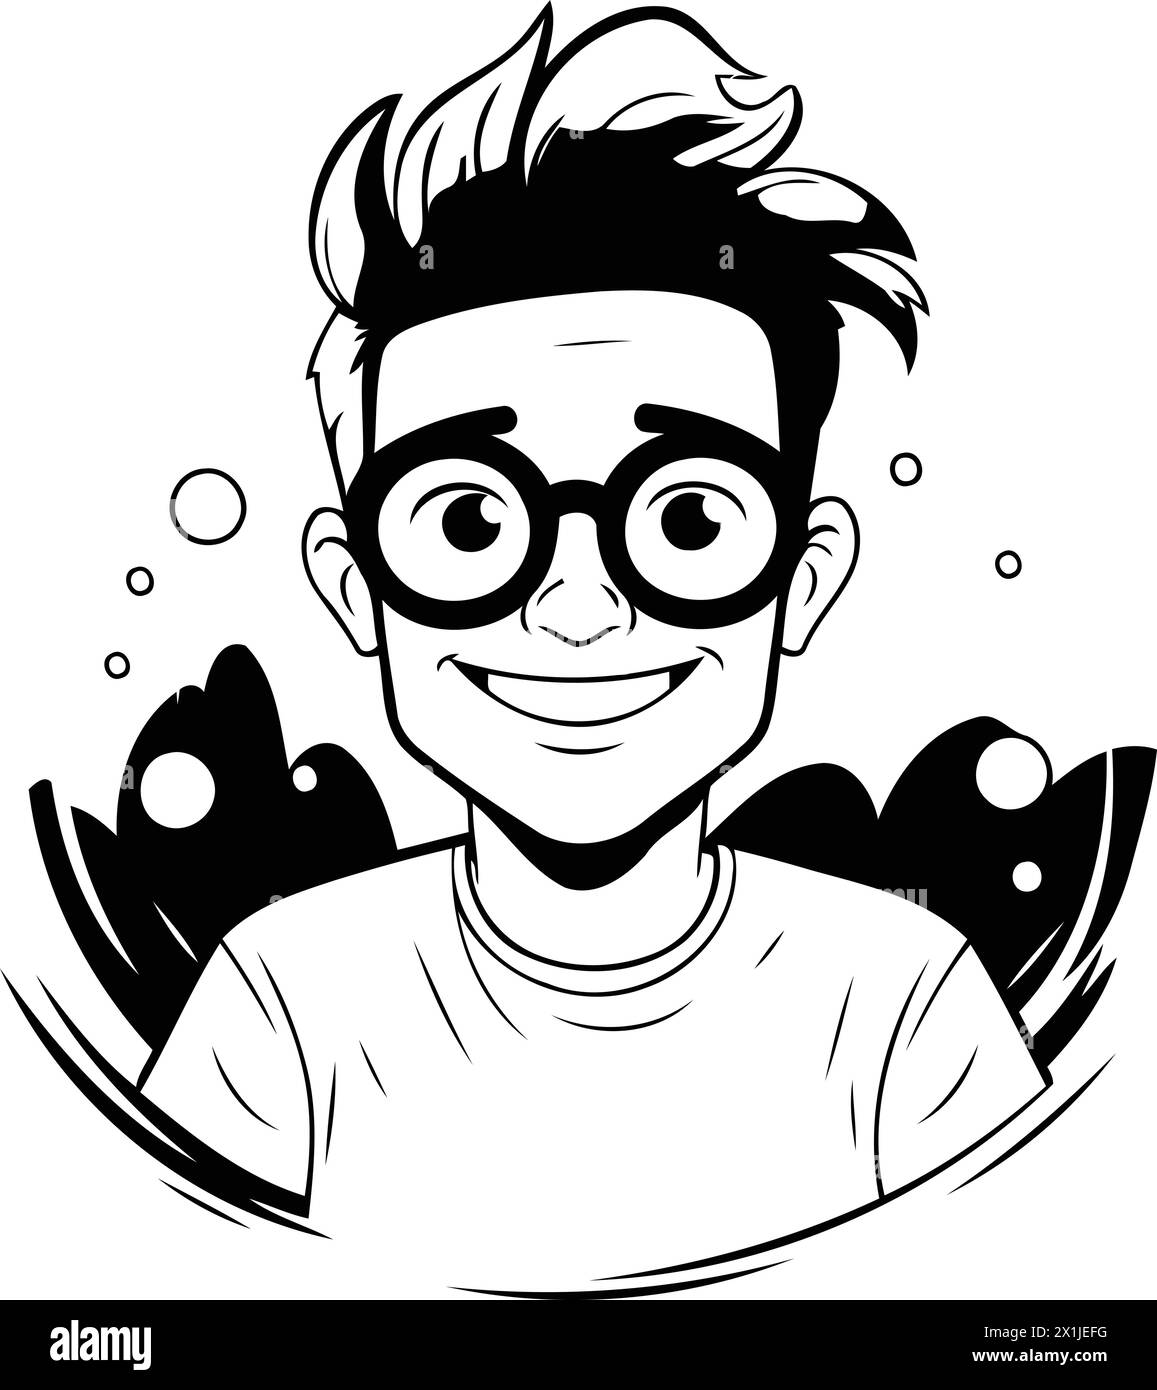 Vektorillustration eines jungen Mannes mit Brille und nassem Haar. Zeichentrickstil. Stock Vektor